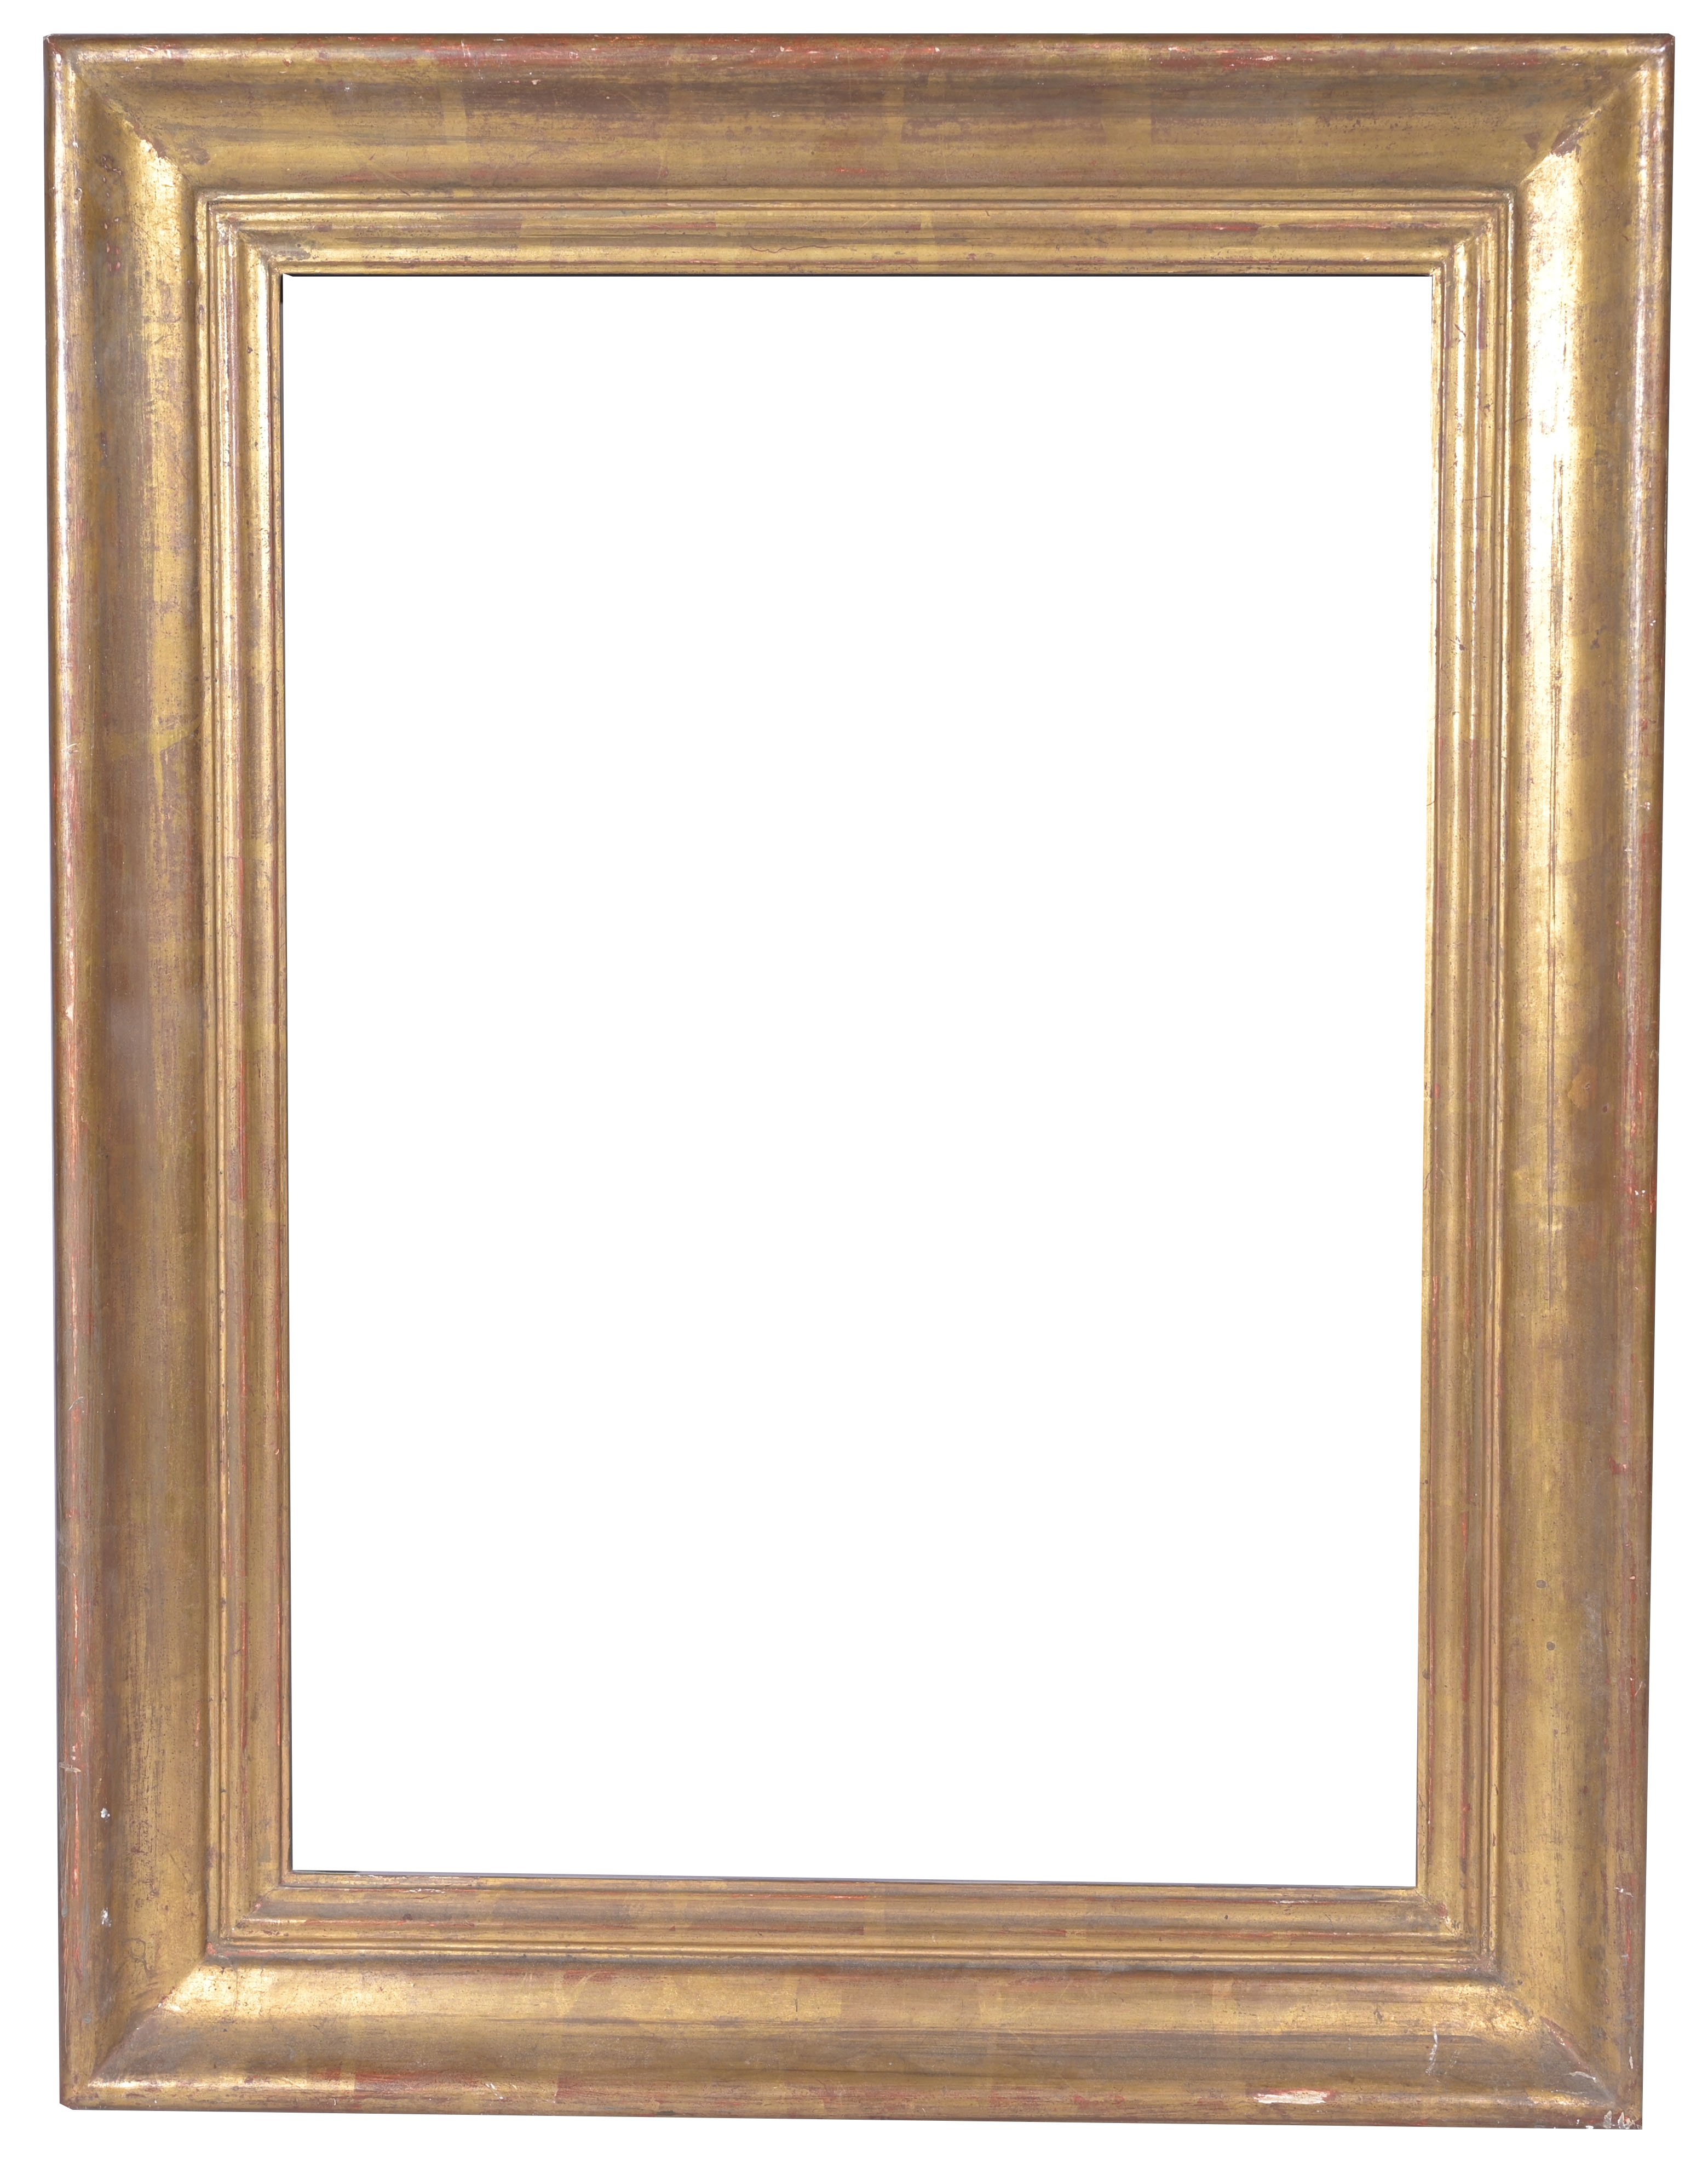 European 19th C. Gilt Wood Frame- 23.25 x 18.75